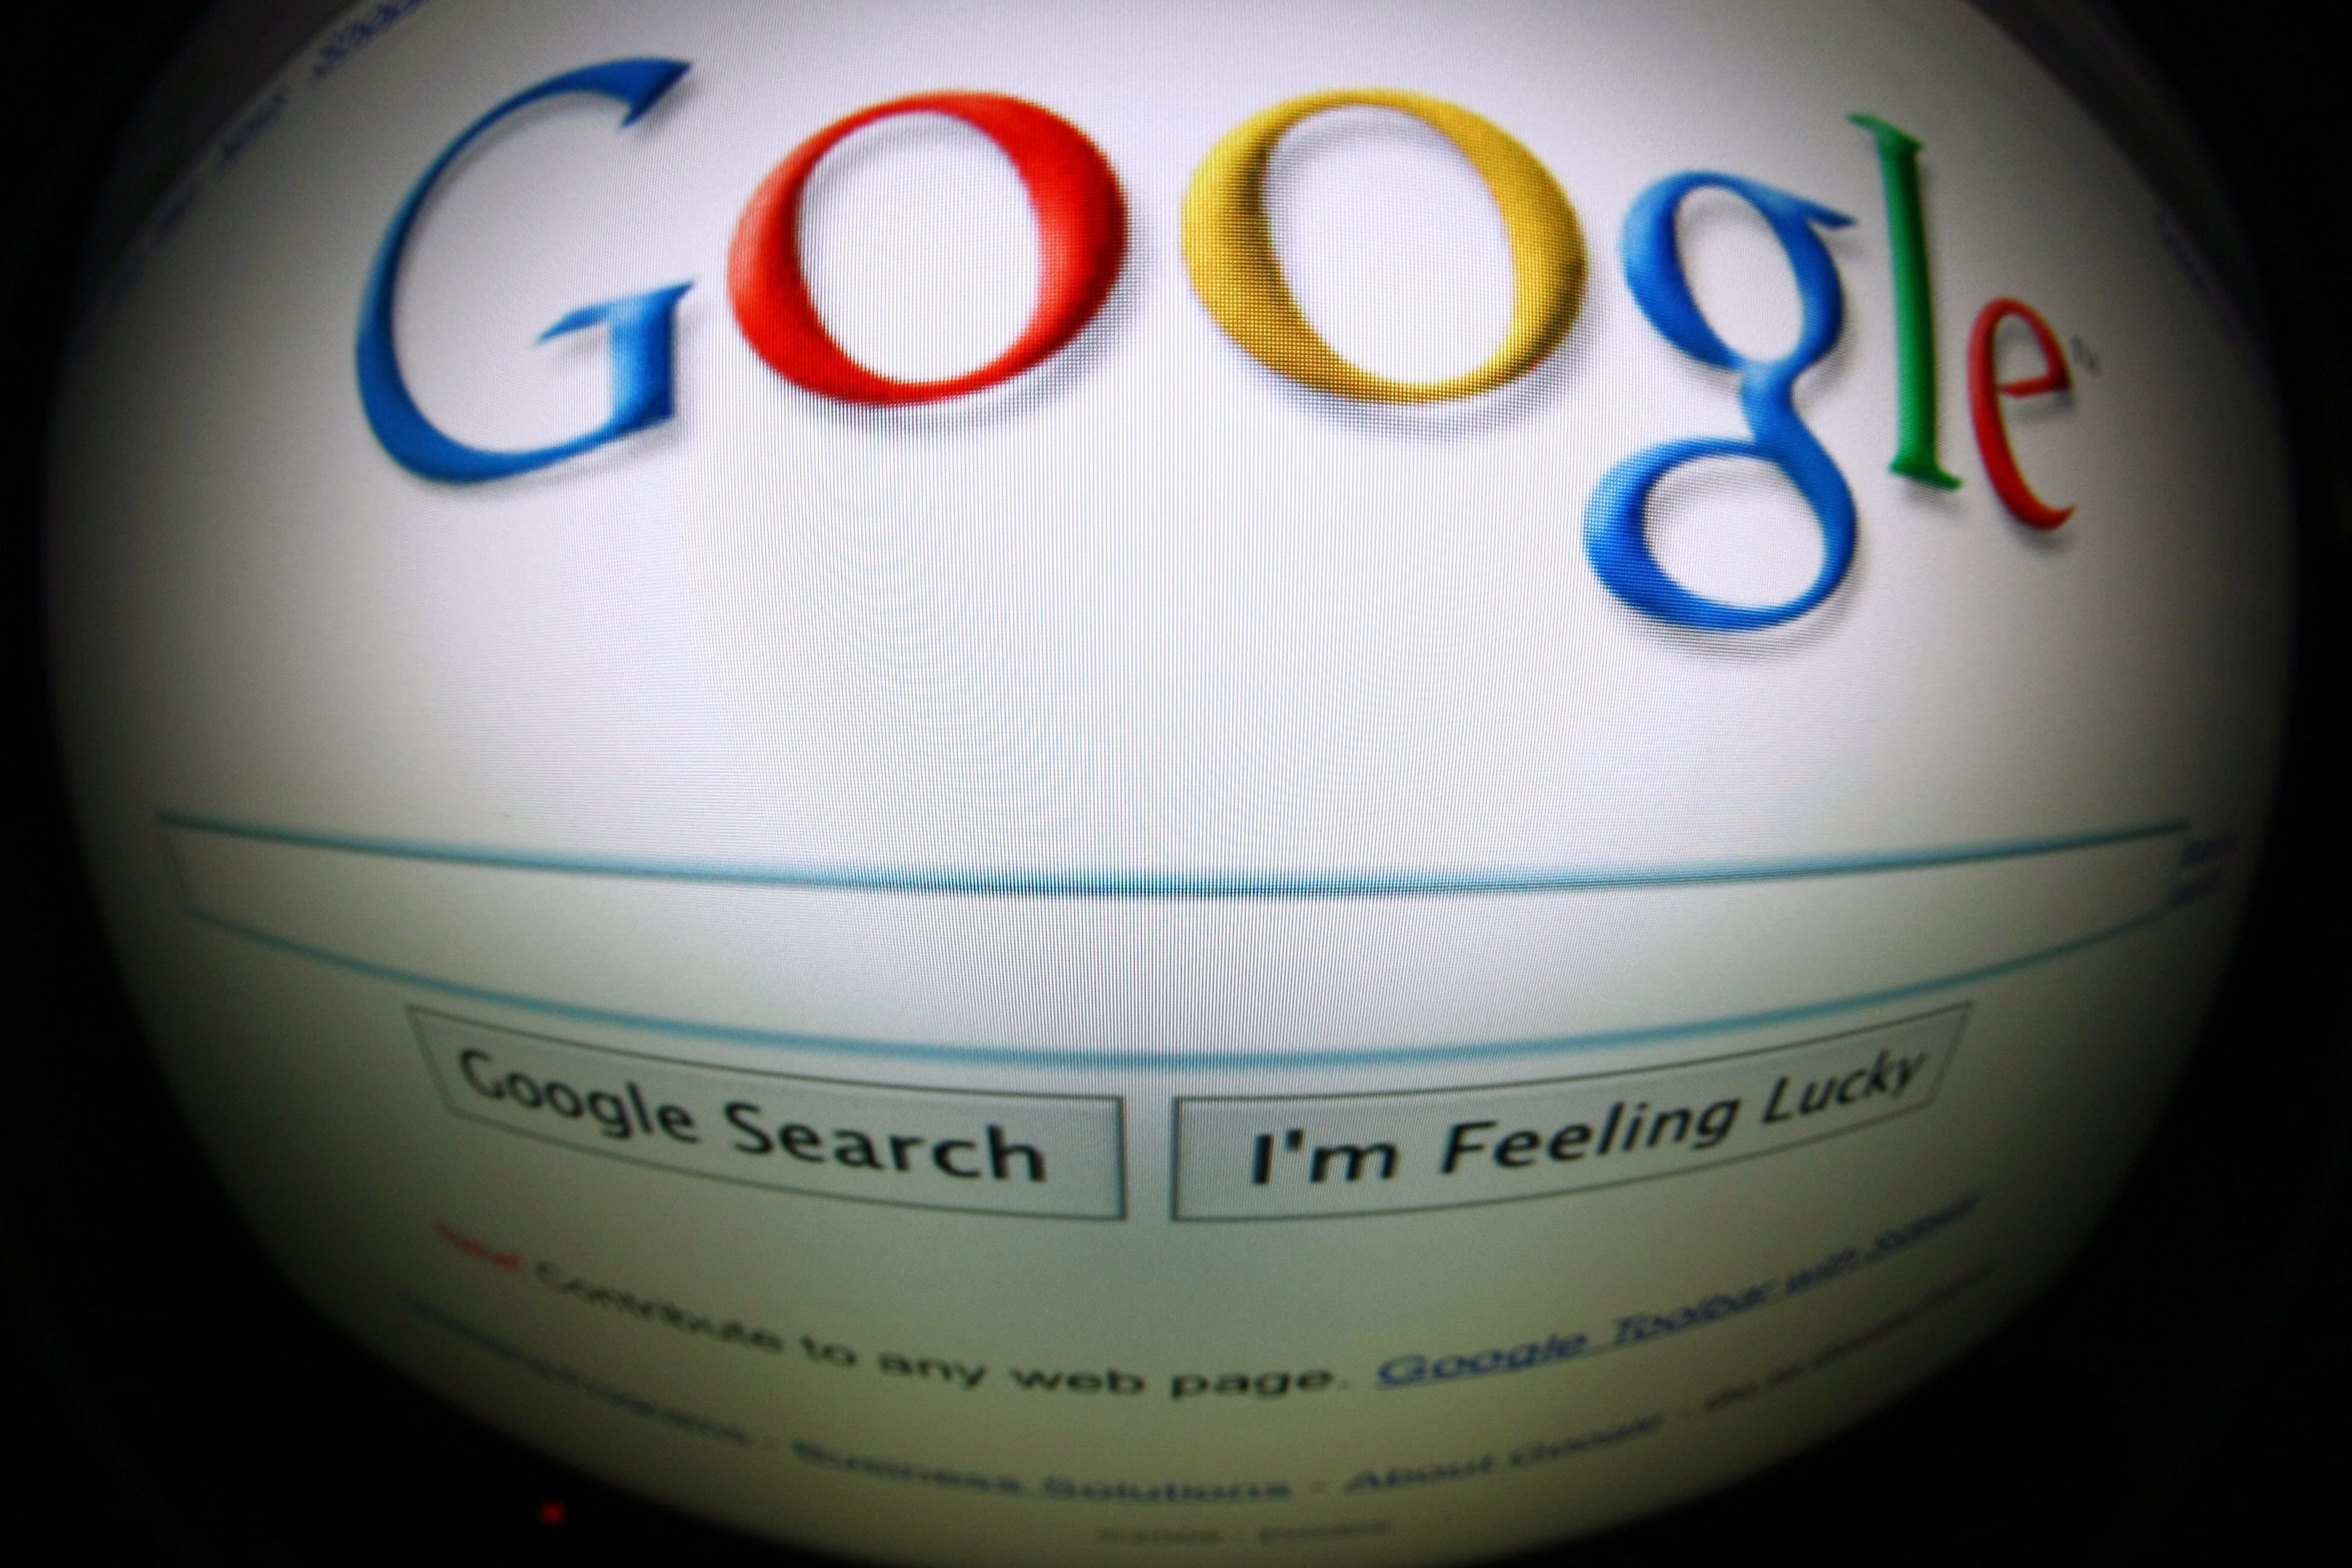 Googlexxxww - Google seeks to scrub Web of child porn | CNN Business